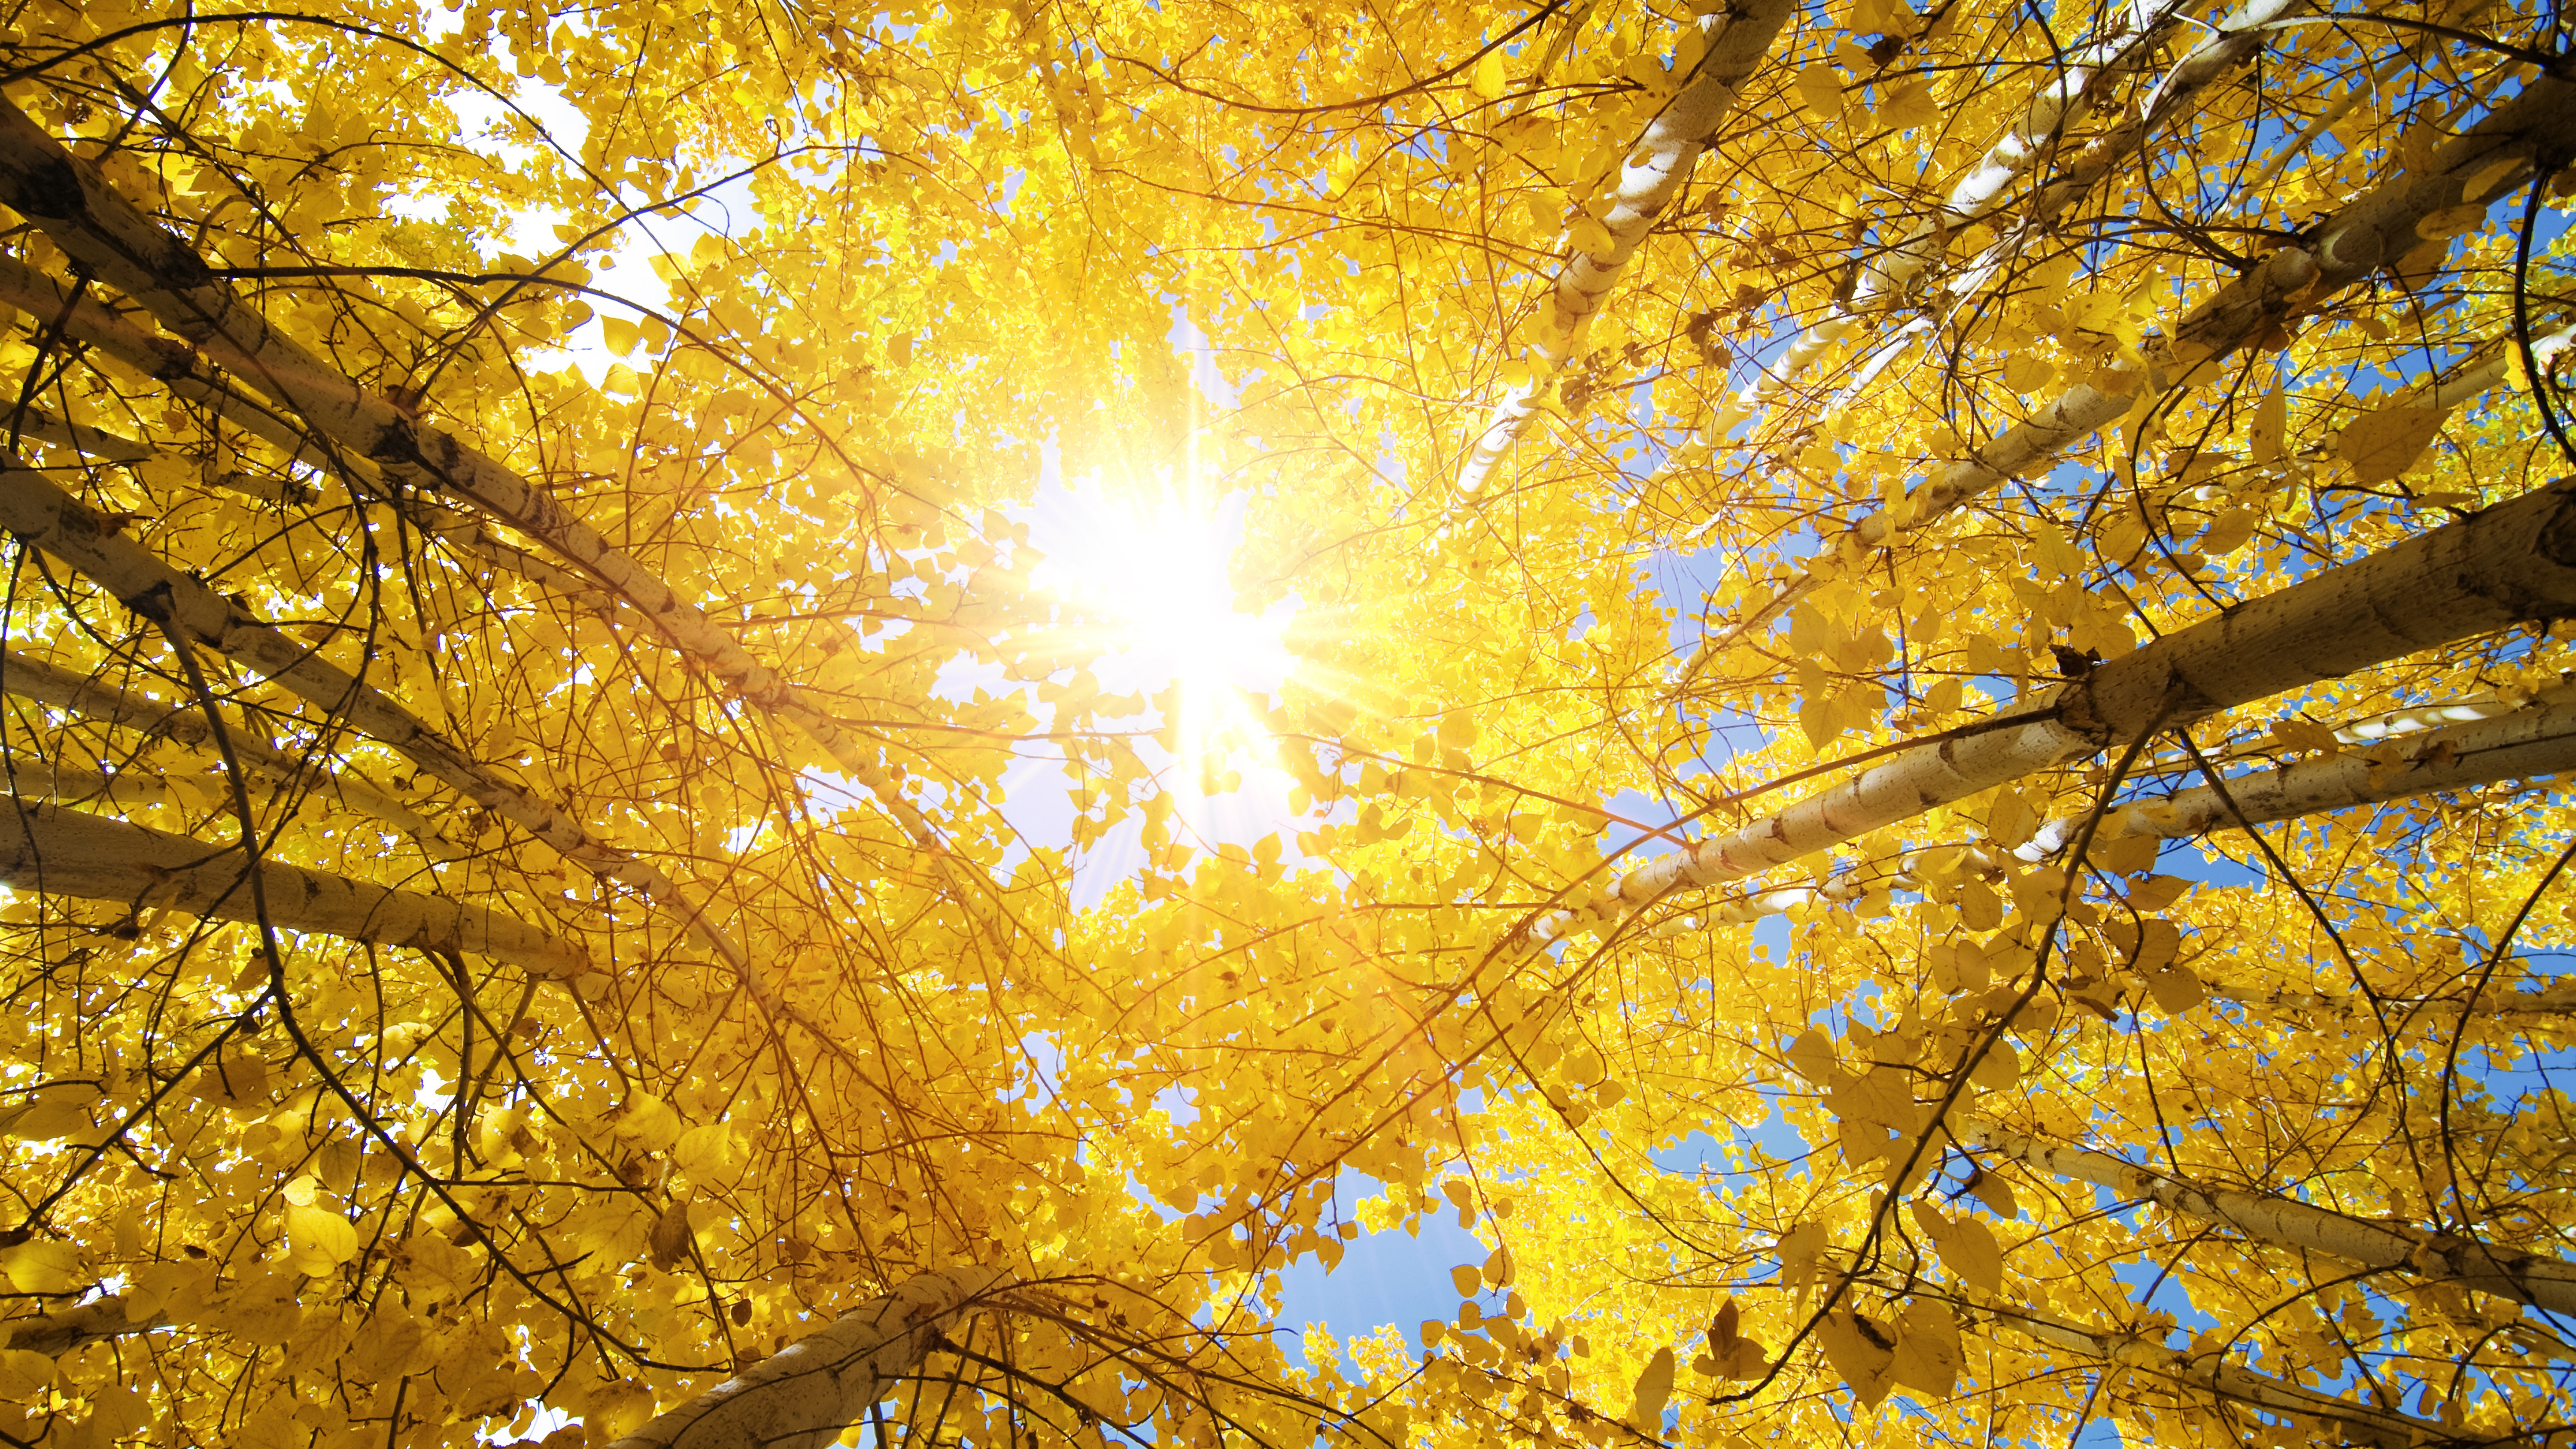 Aspen Tree In Fall , HD Wallpaper & Backgrounds